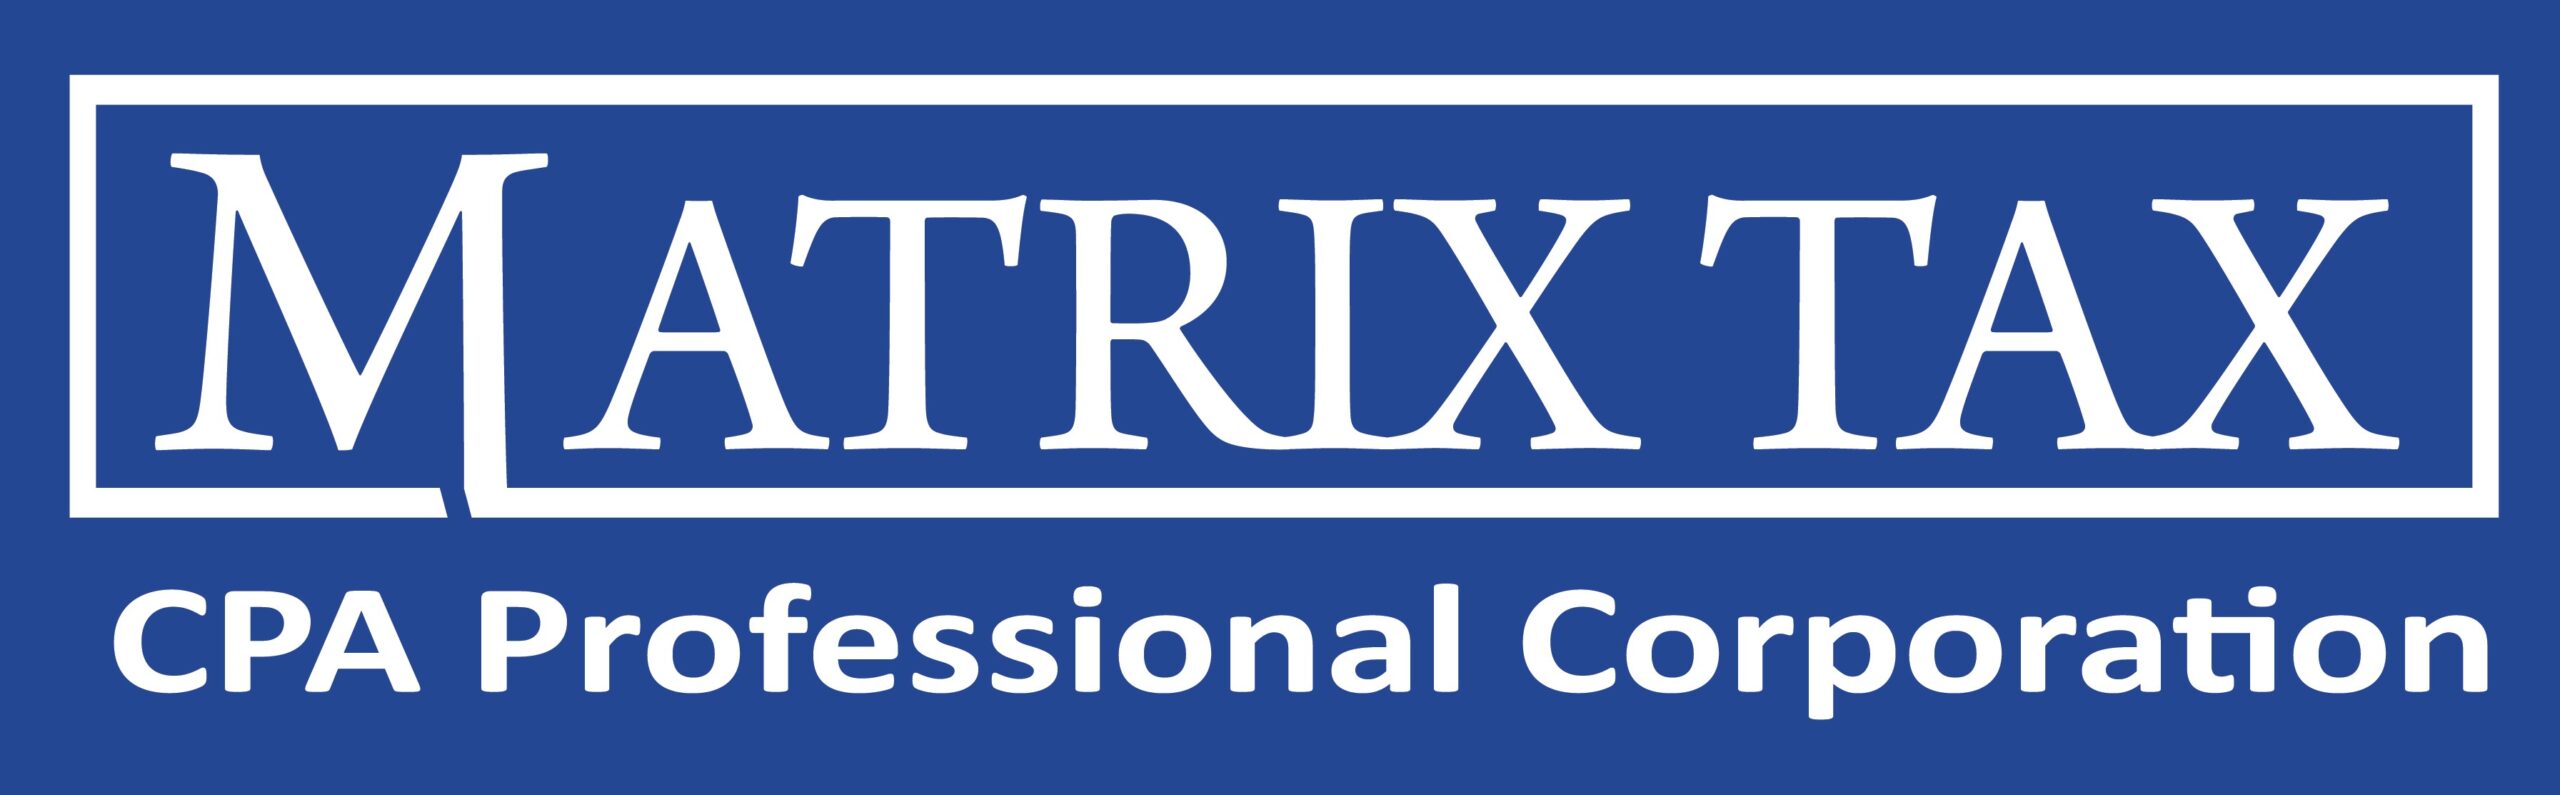 Matrix Tax Consultant